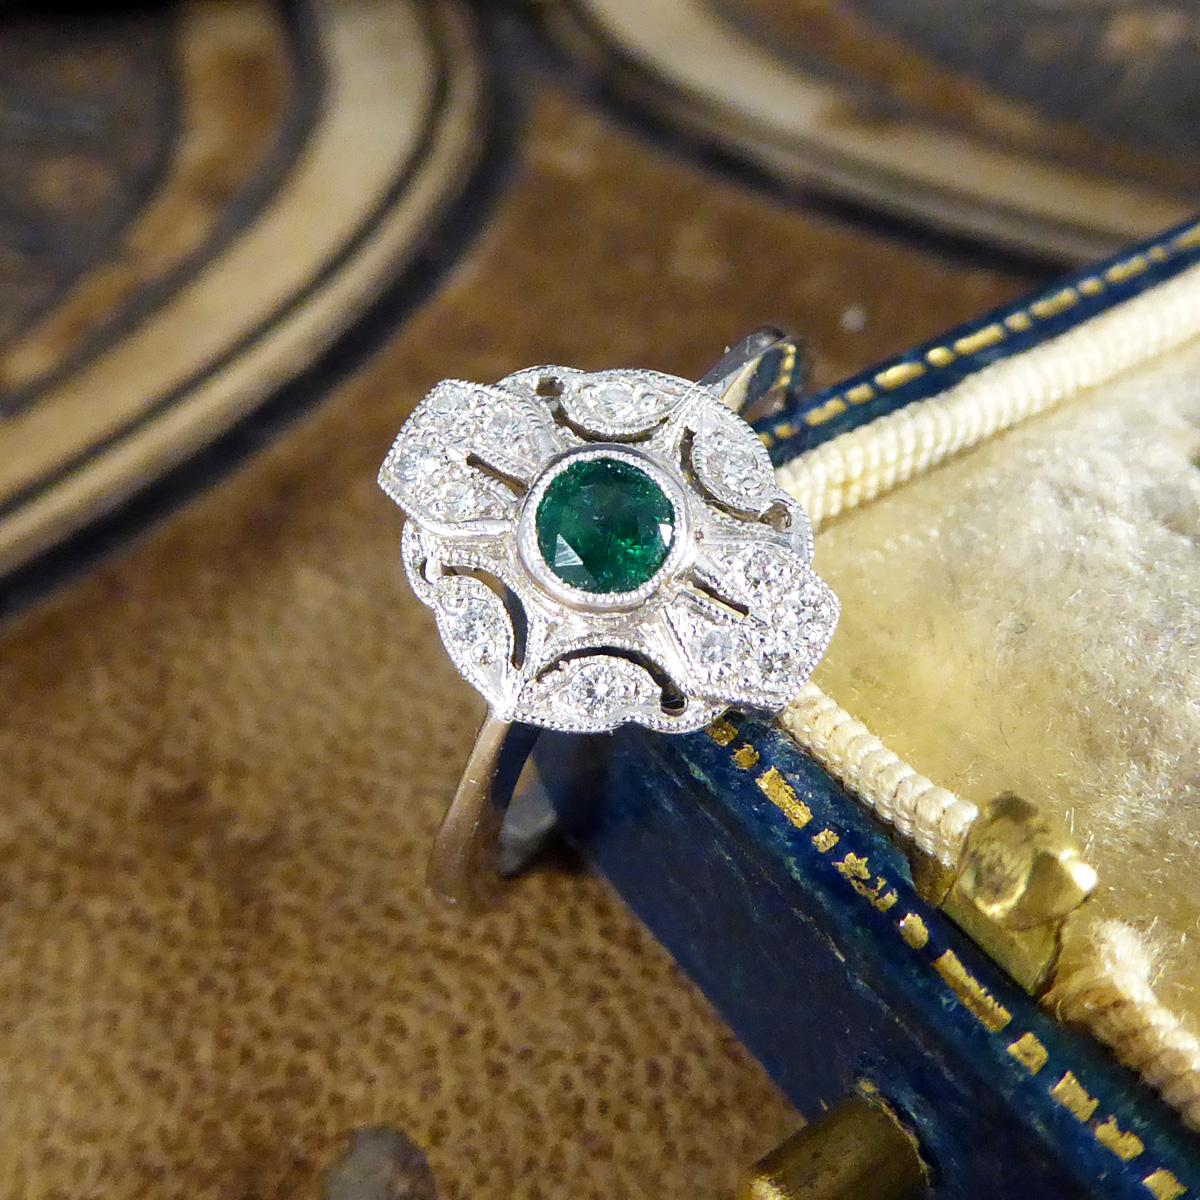 Premium Period Art Deco Replica Emerald and Diamond Ring in 18ct White Gold For Sale 3